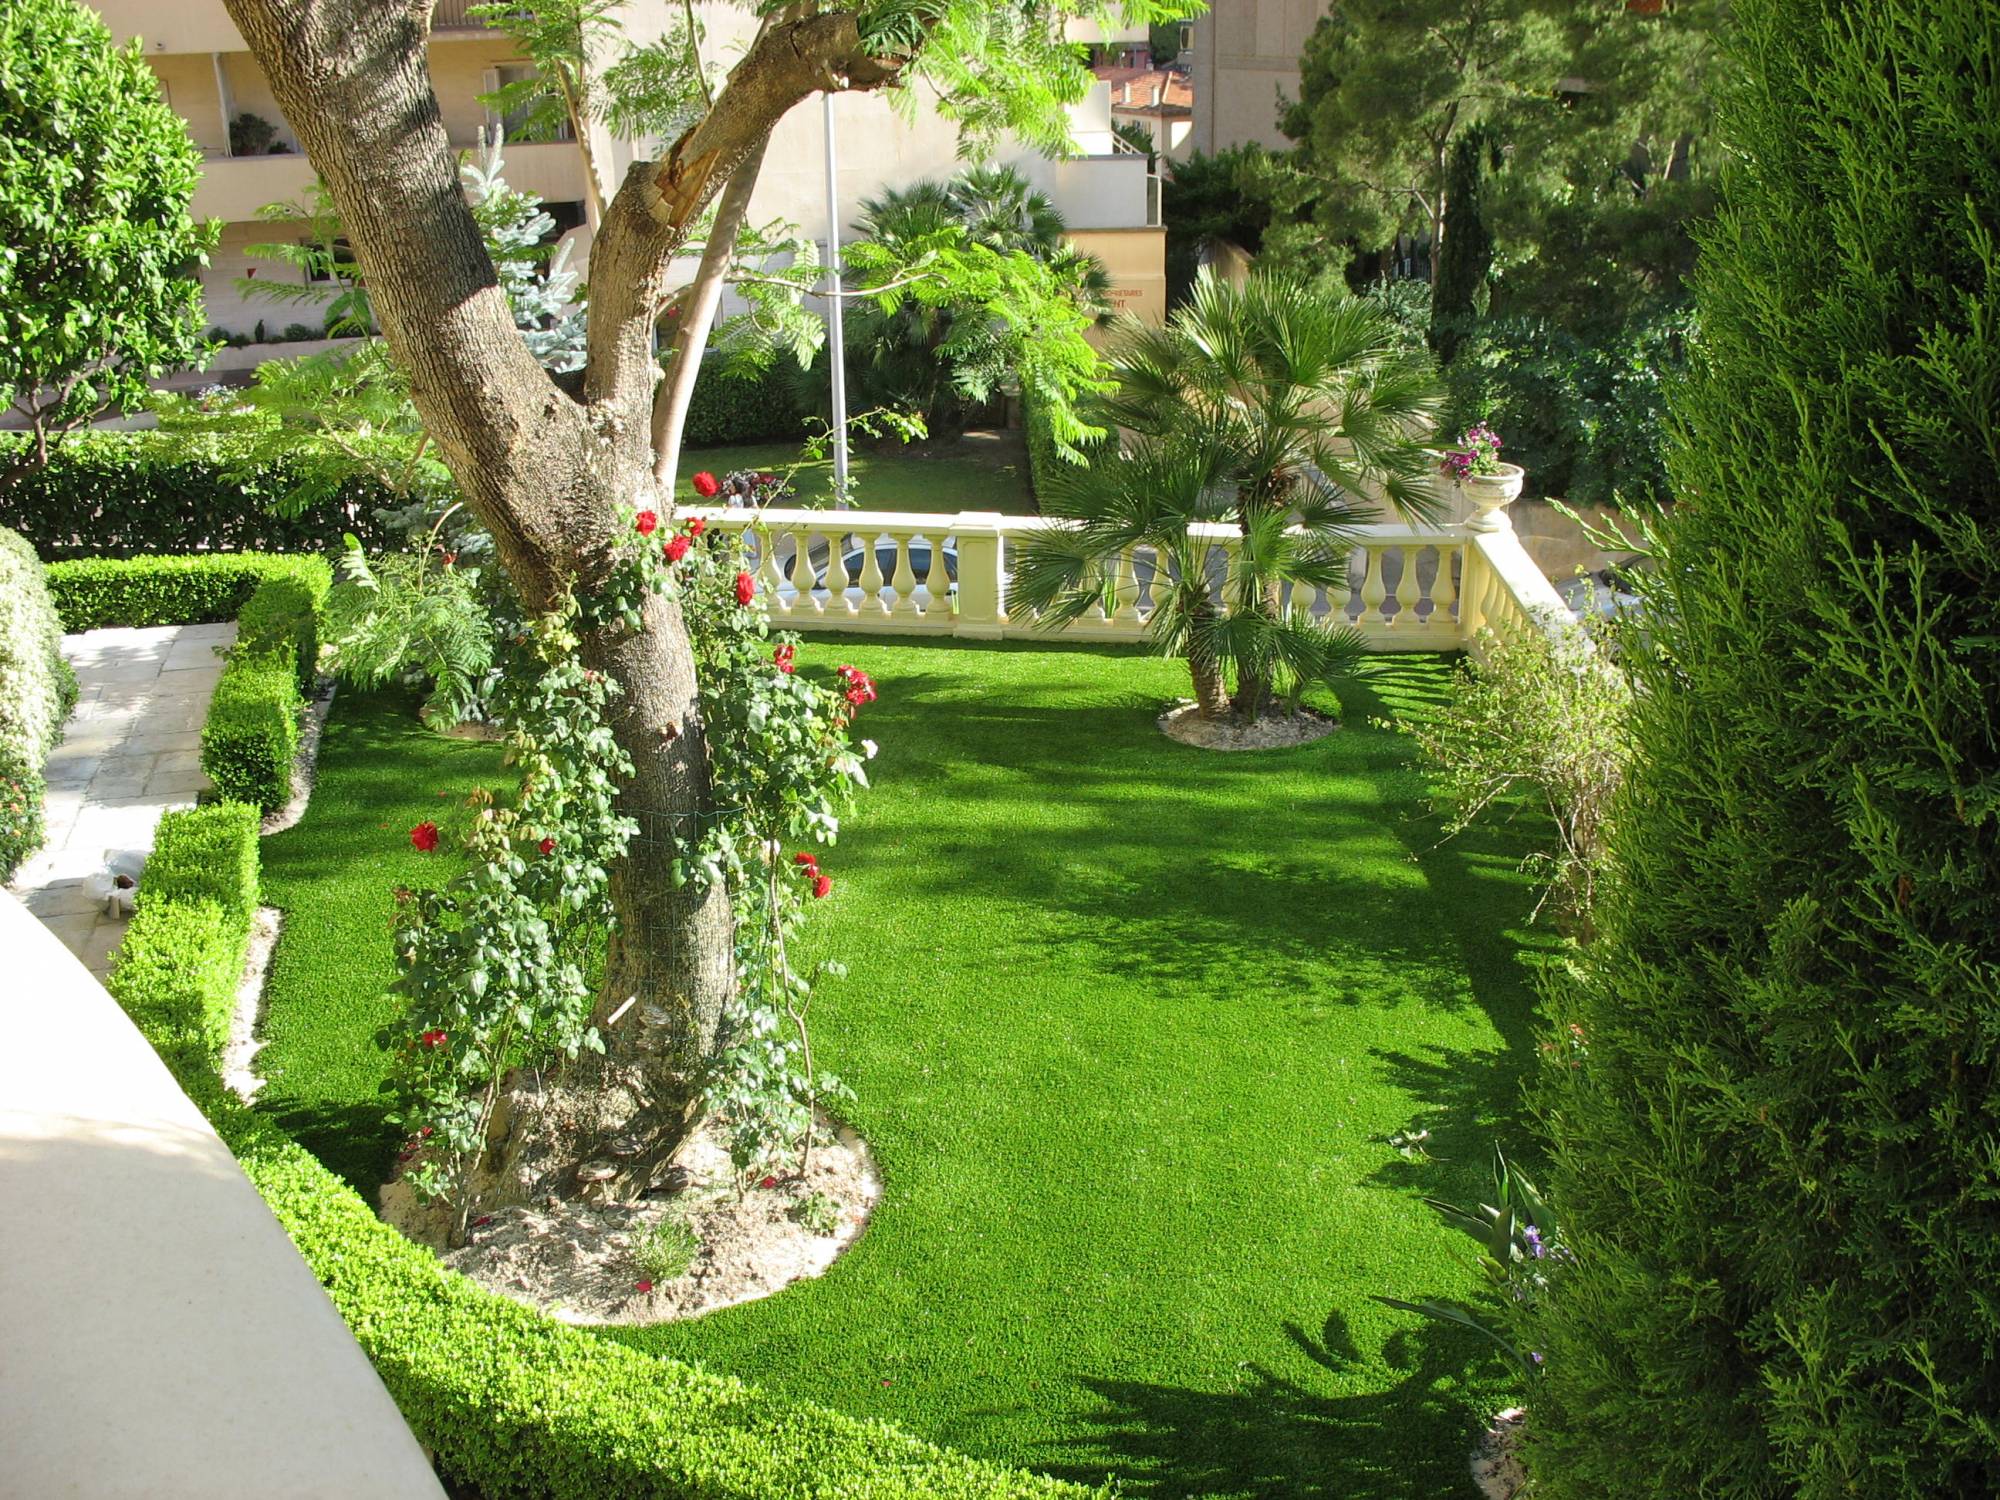 Gazon synthétique Realisme 42 mm pour l'aménagement de votre jardin.